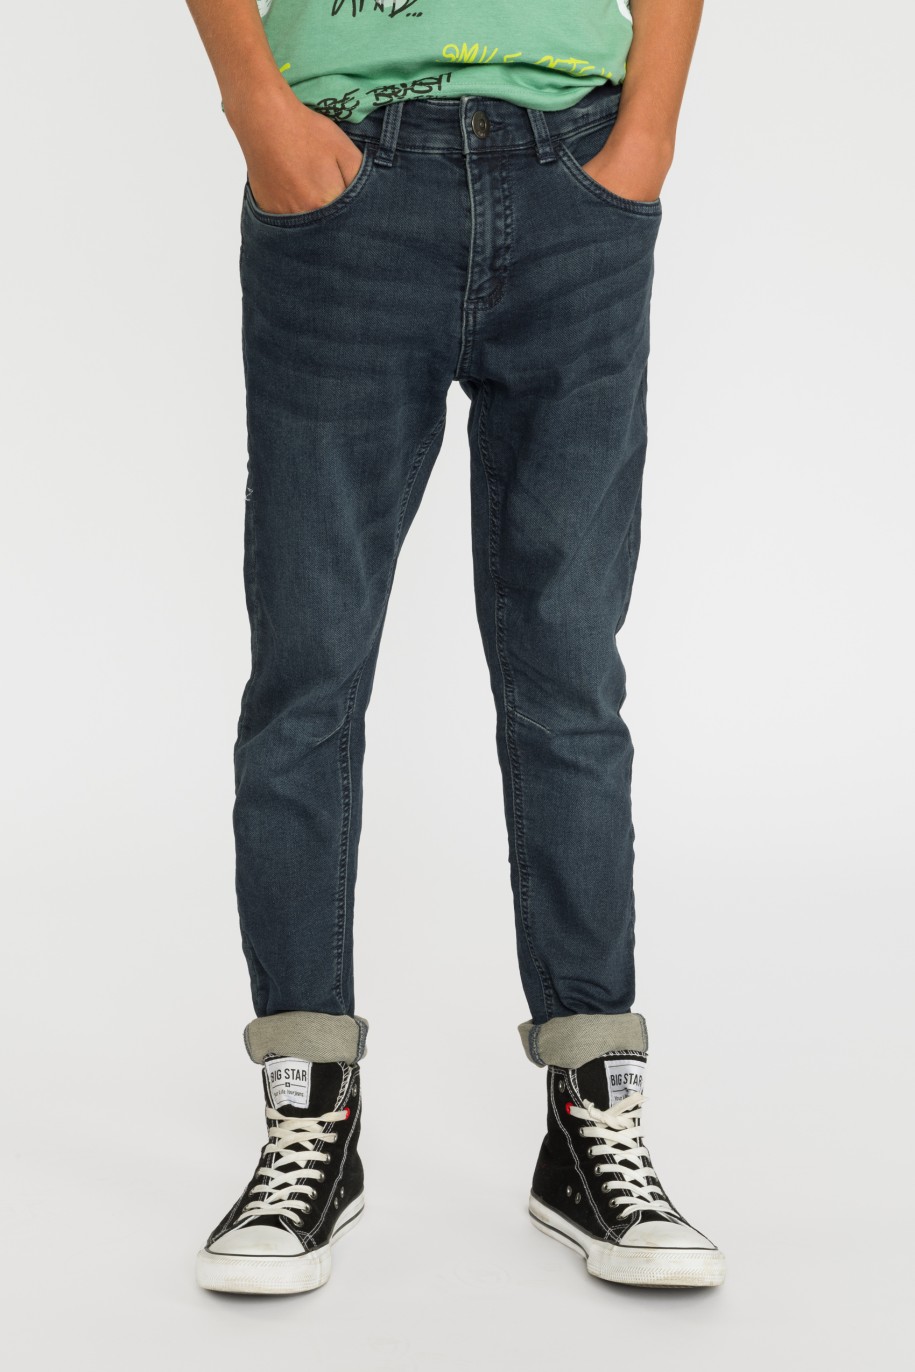 Granatowe spodnie jeansowe dla chłopaka - 30298